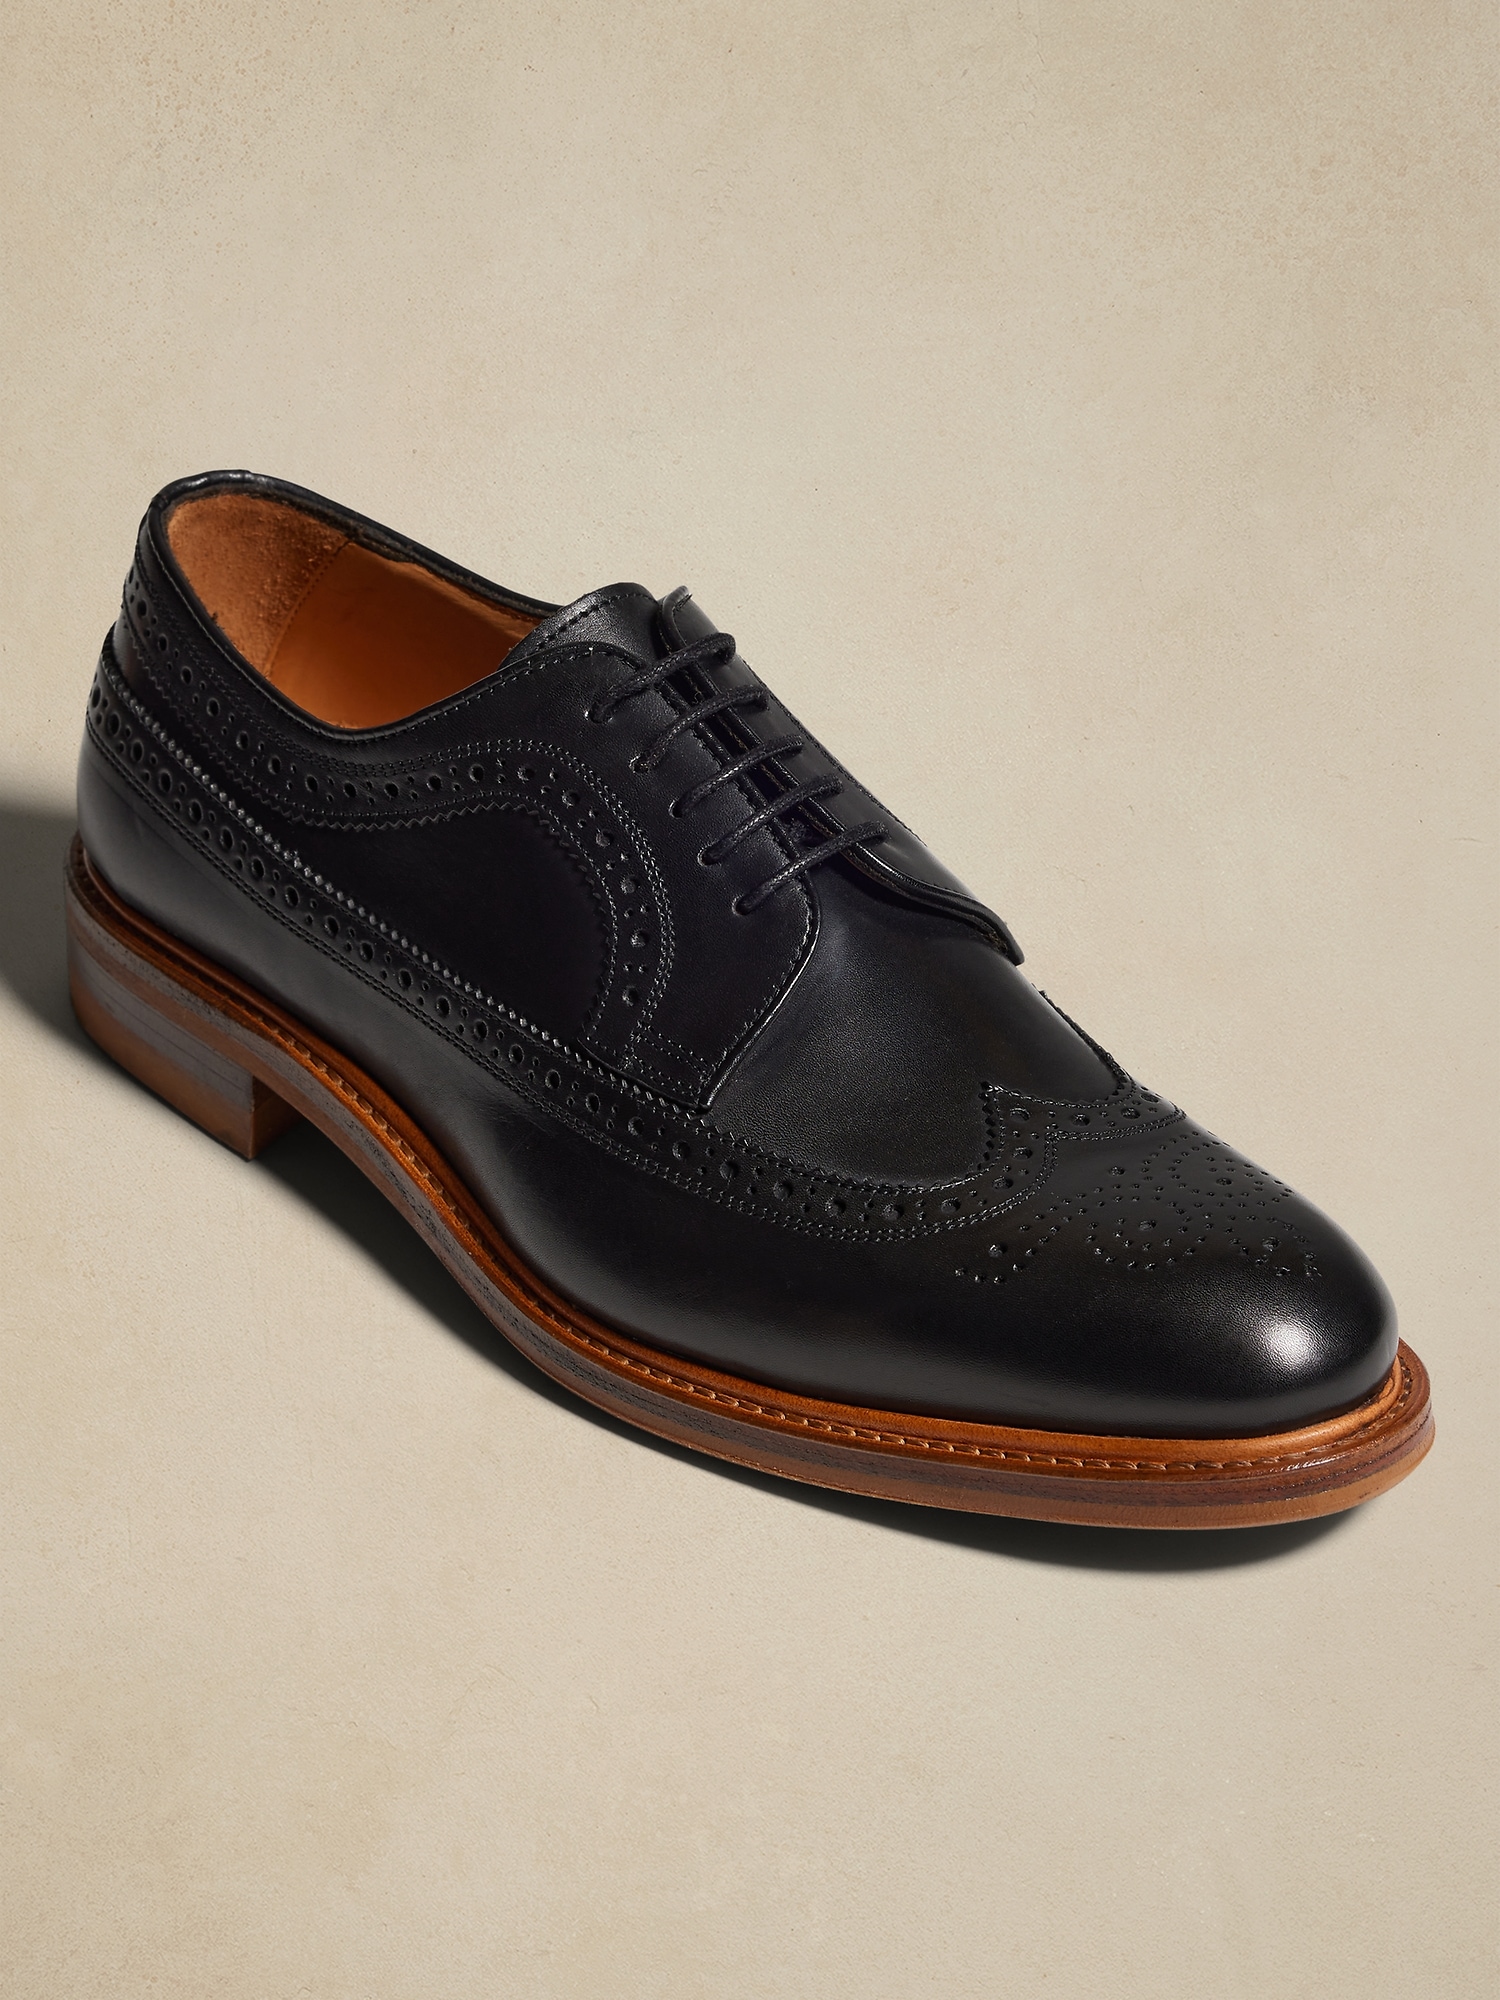 Buy Dark Grey Wingtip Formal Brogue Shoes for Men - Escaro Royale-calidas.vn